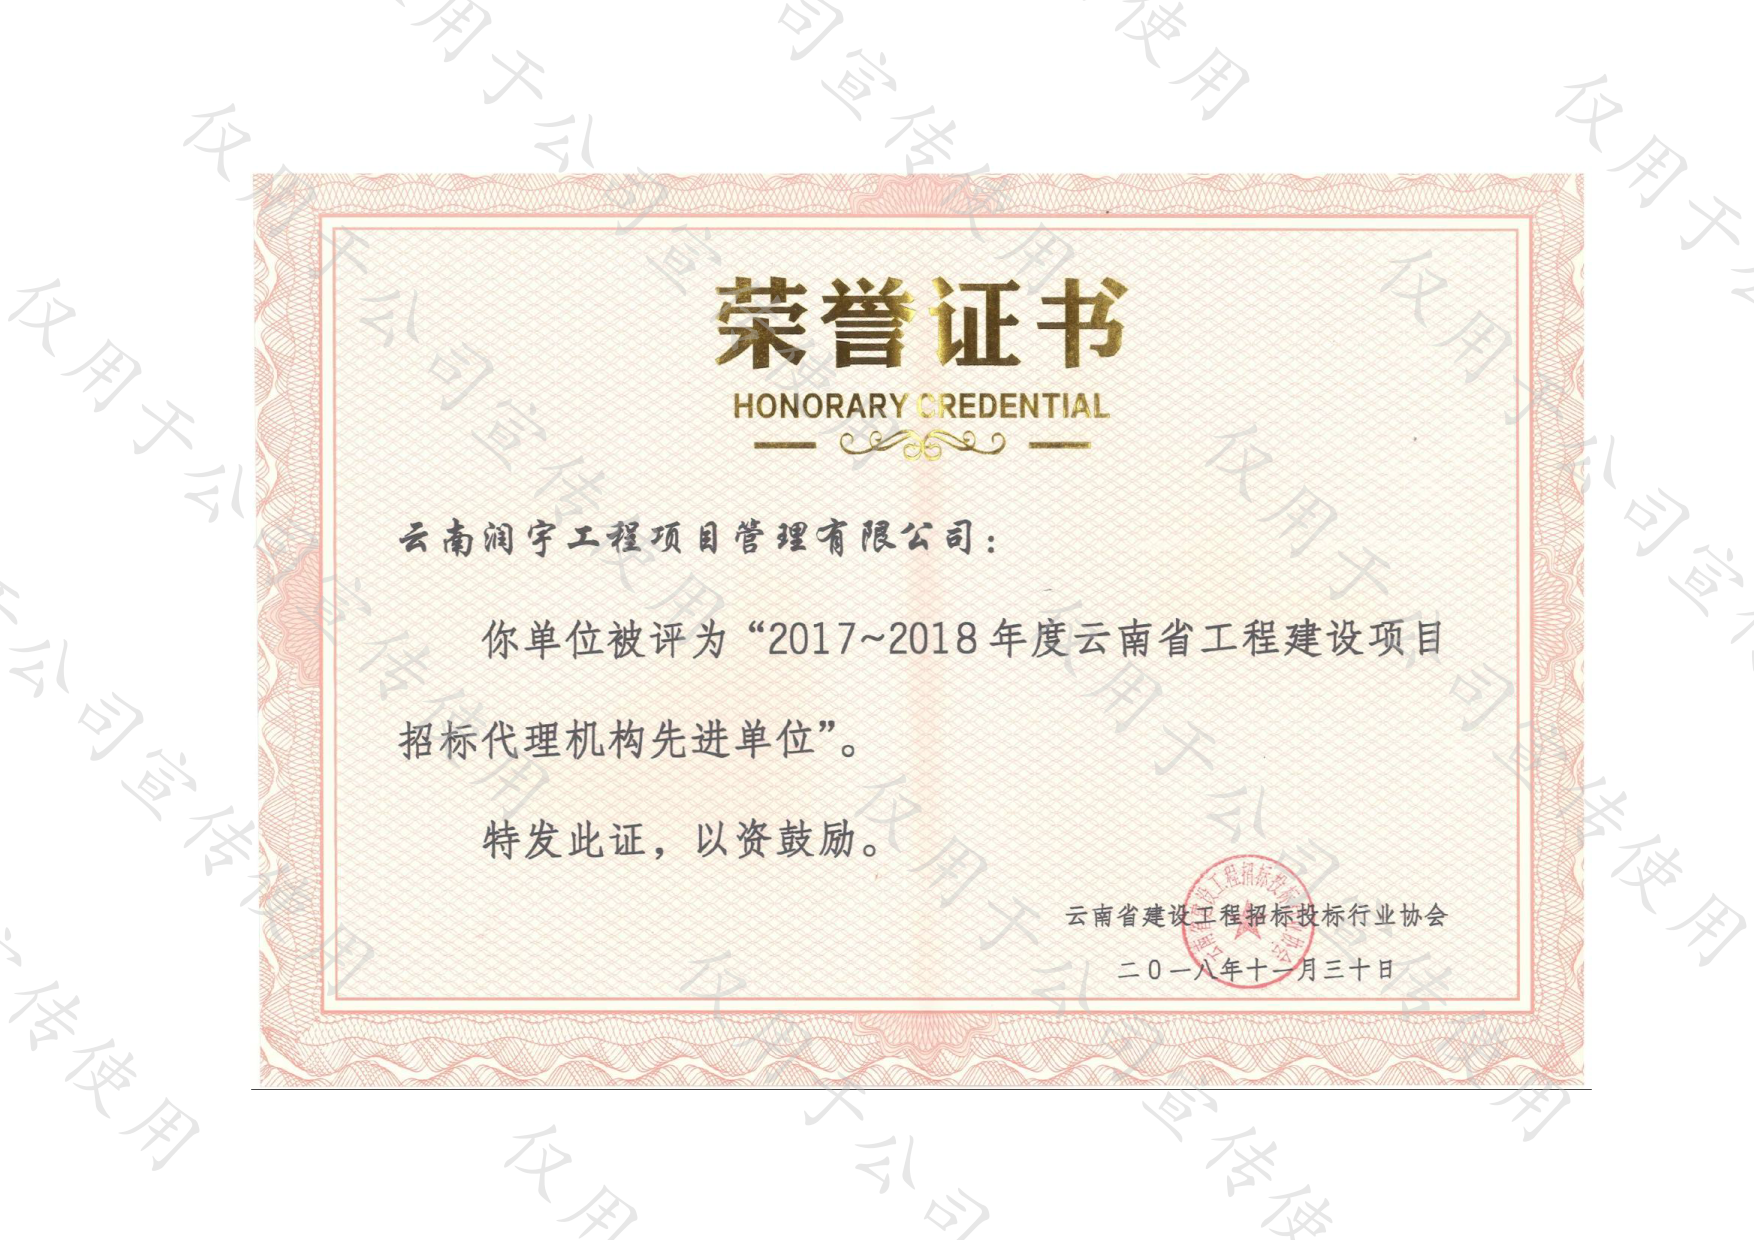 2017-2018年度云南省工程建設項目招標代理機構先進單位